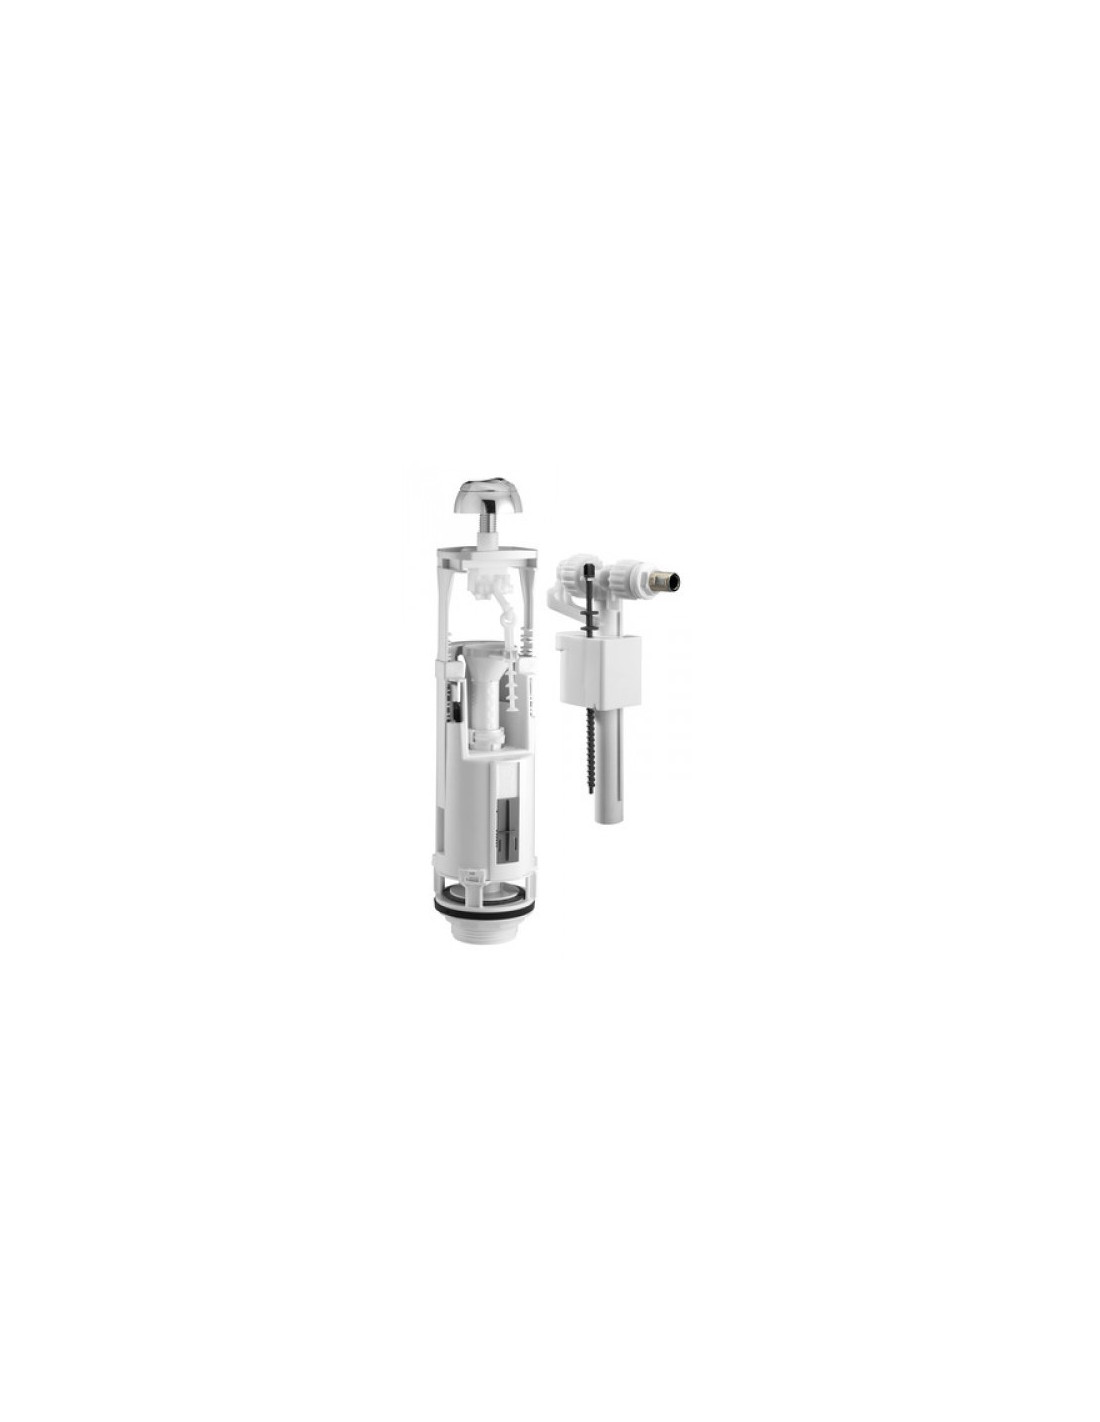 37940010 - Siamp] - Ensemble de chasse Optima S/ robinet flotteur Compact  95L